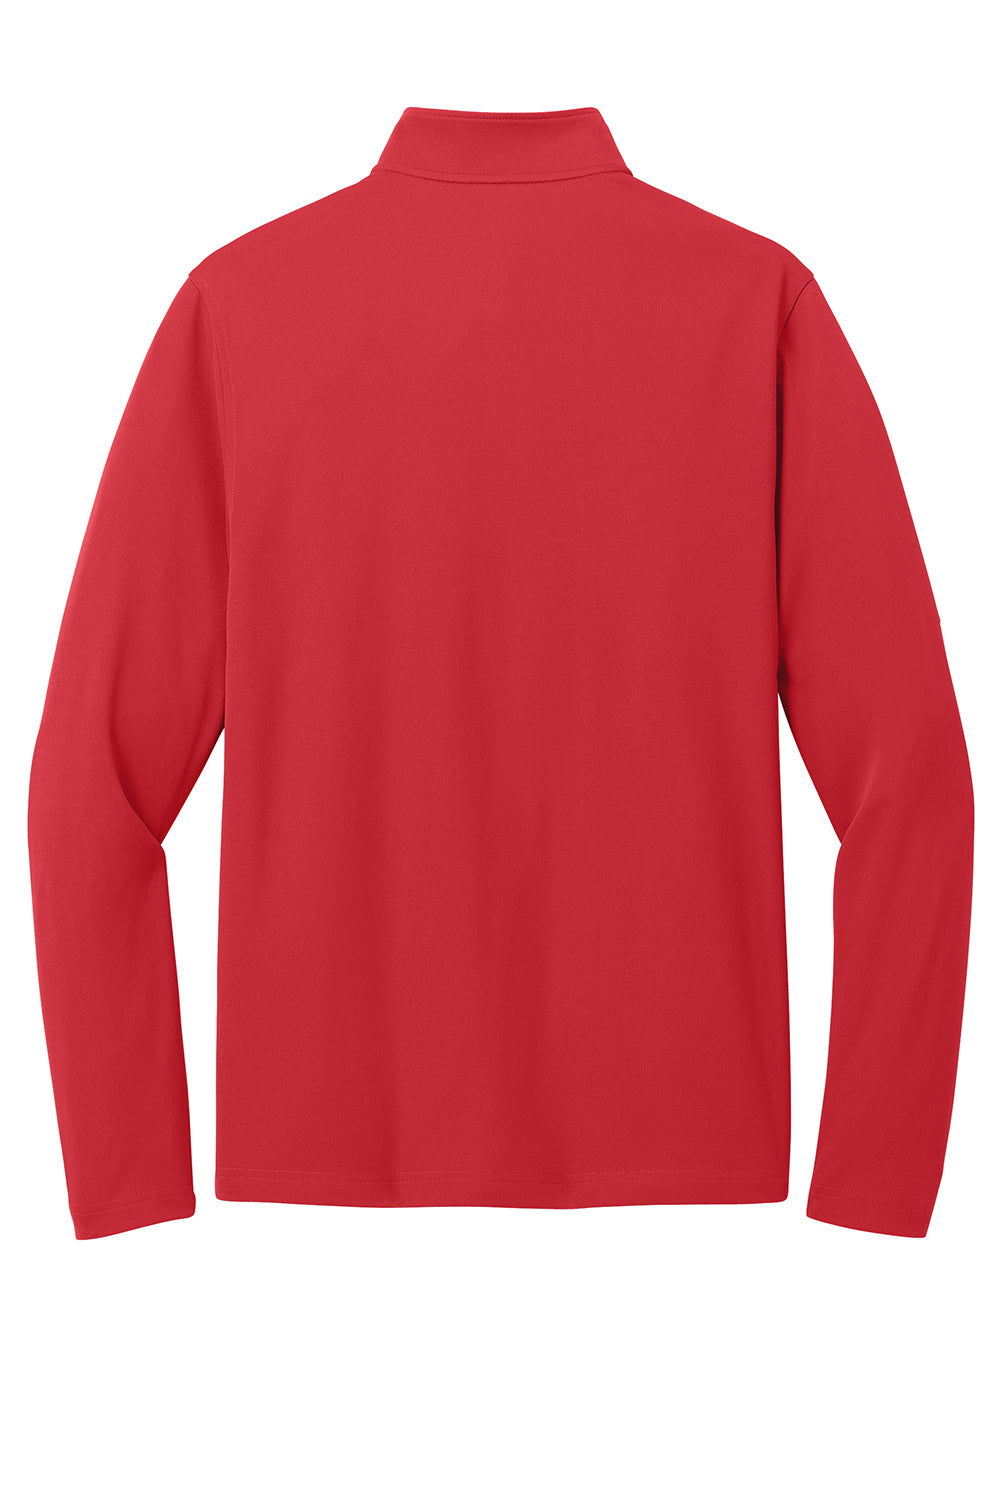 Port Authority K112 Mens Dry Zone UV Micro Mesh 1/4 Zip Sweatshirt Rich Red Flat Back